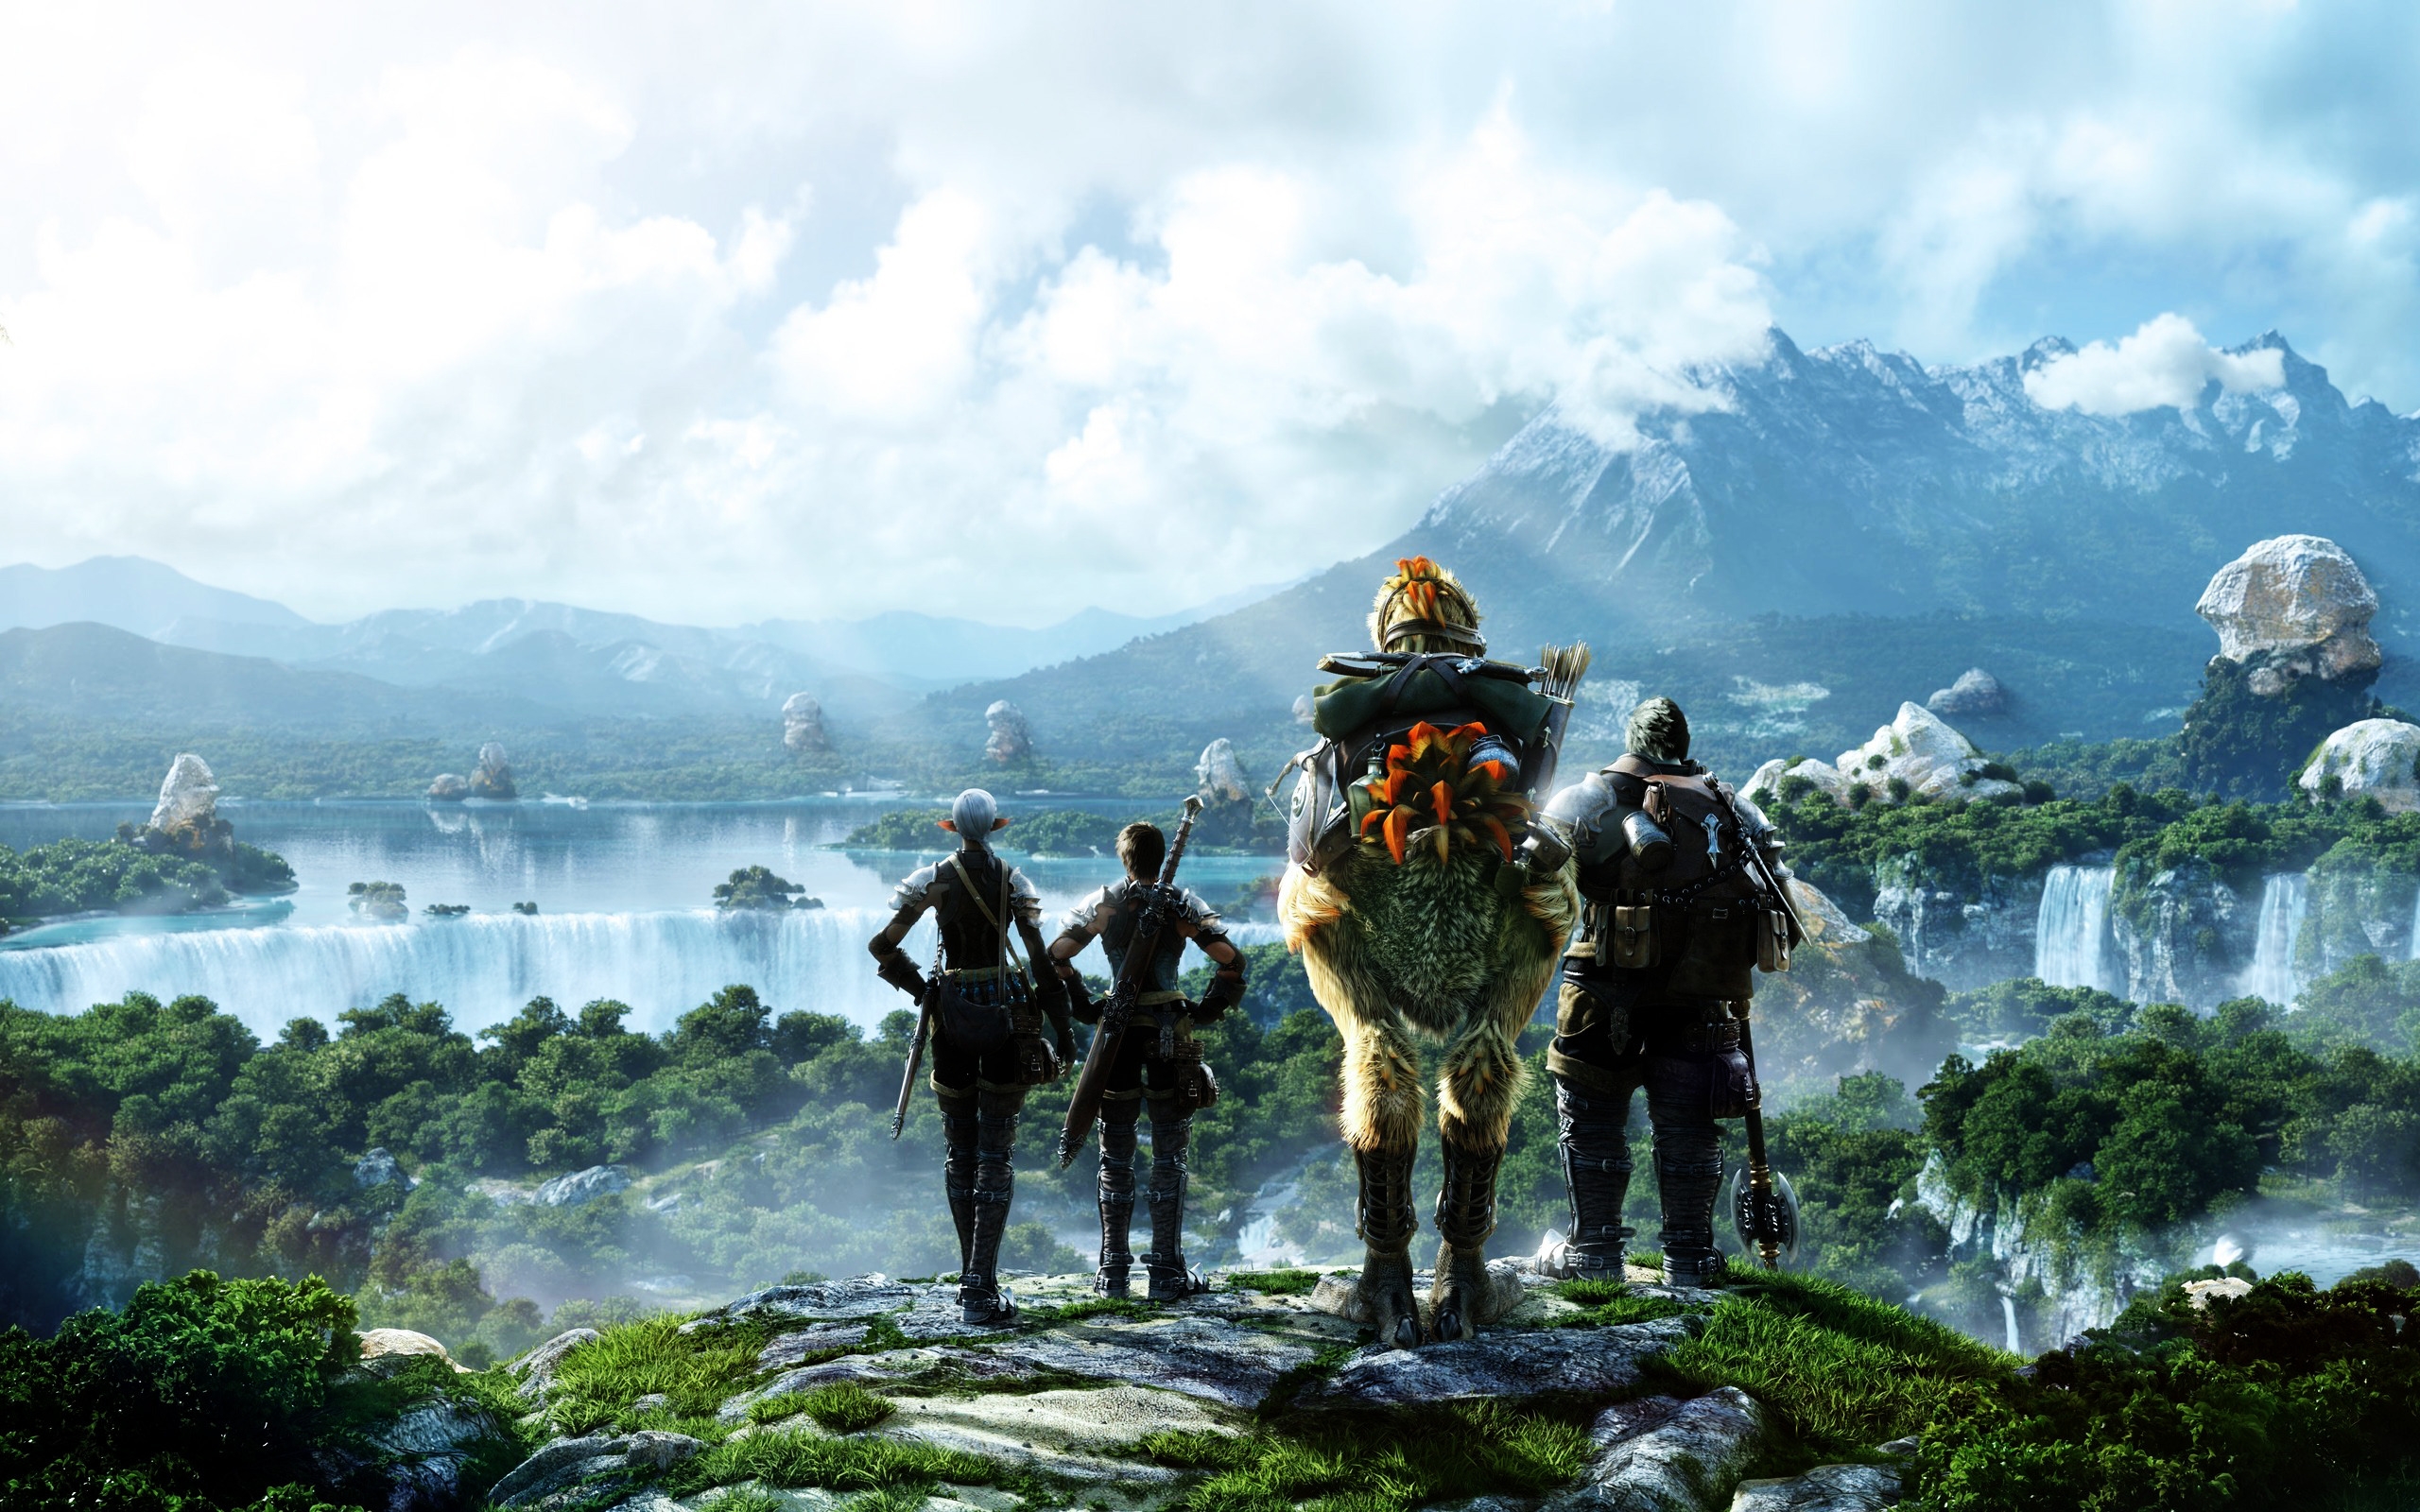 Final Fantasy Scene for 2560 x 1600 widescreen resolution